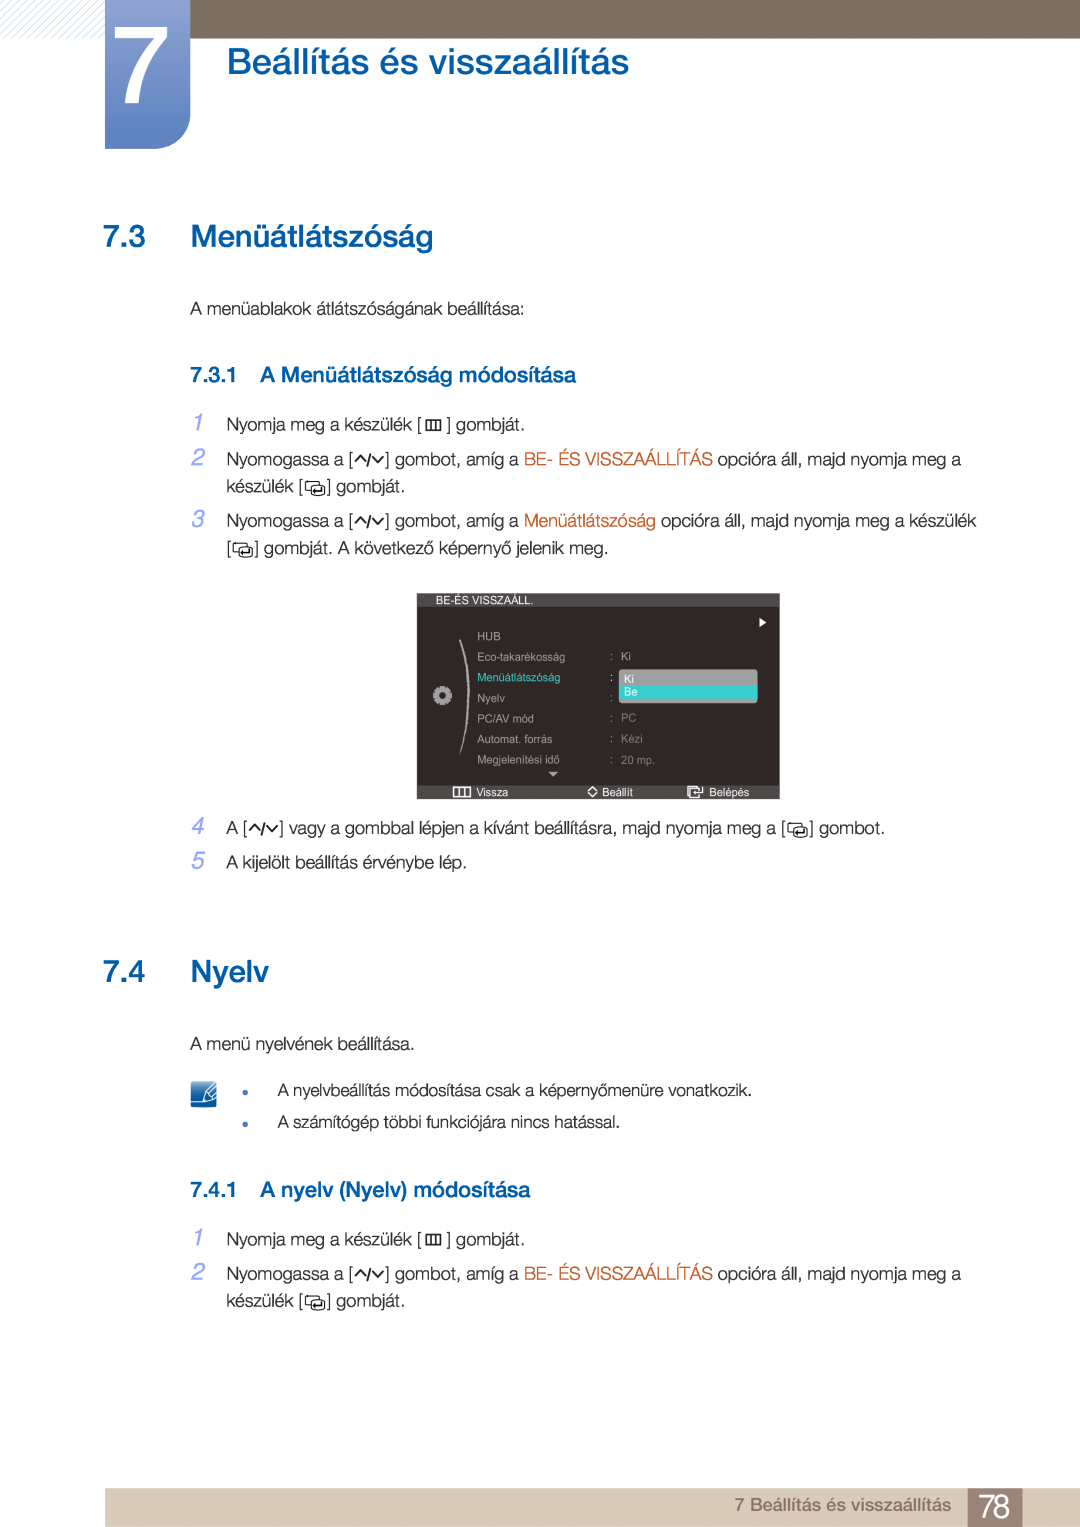 Samsung LC23A750XS/EN, LC27A750XS/EN manual 7.3 Menüátlátszóság, A Menüátlátszóság módosítása, A nyelv Nyelv módosítása 